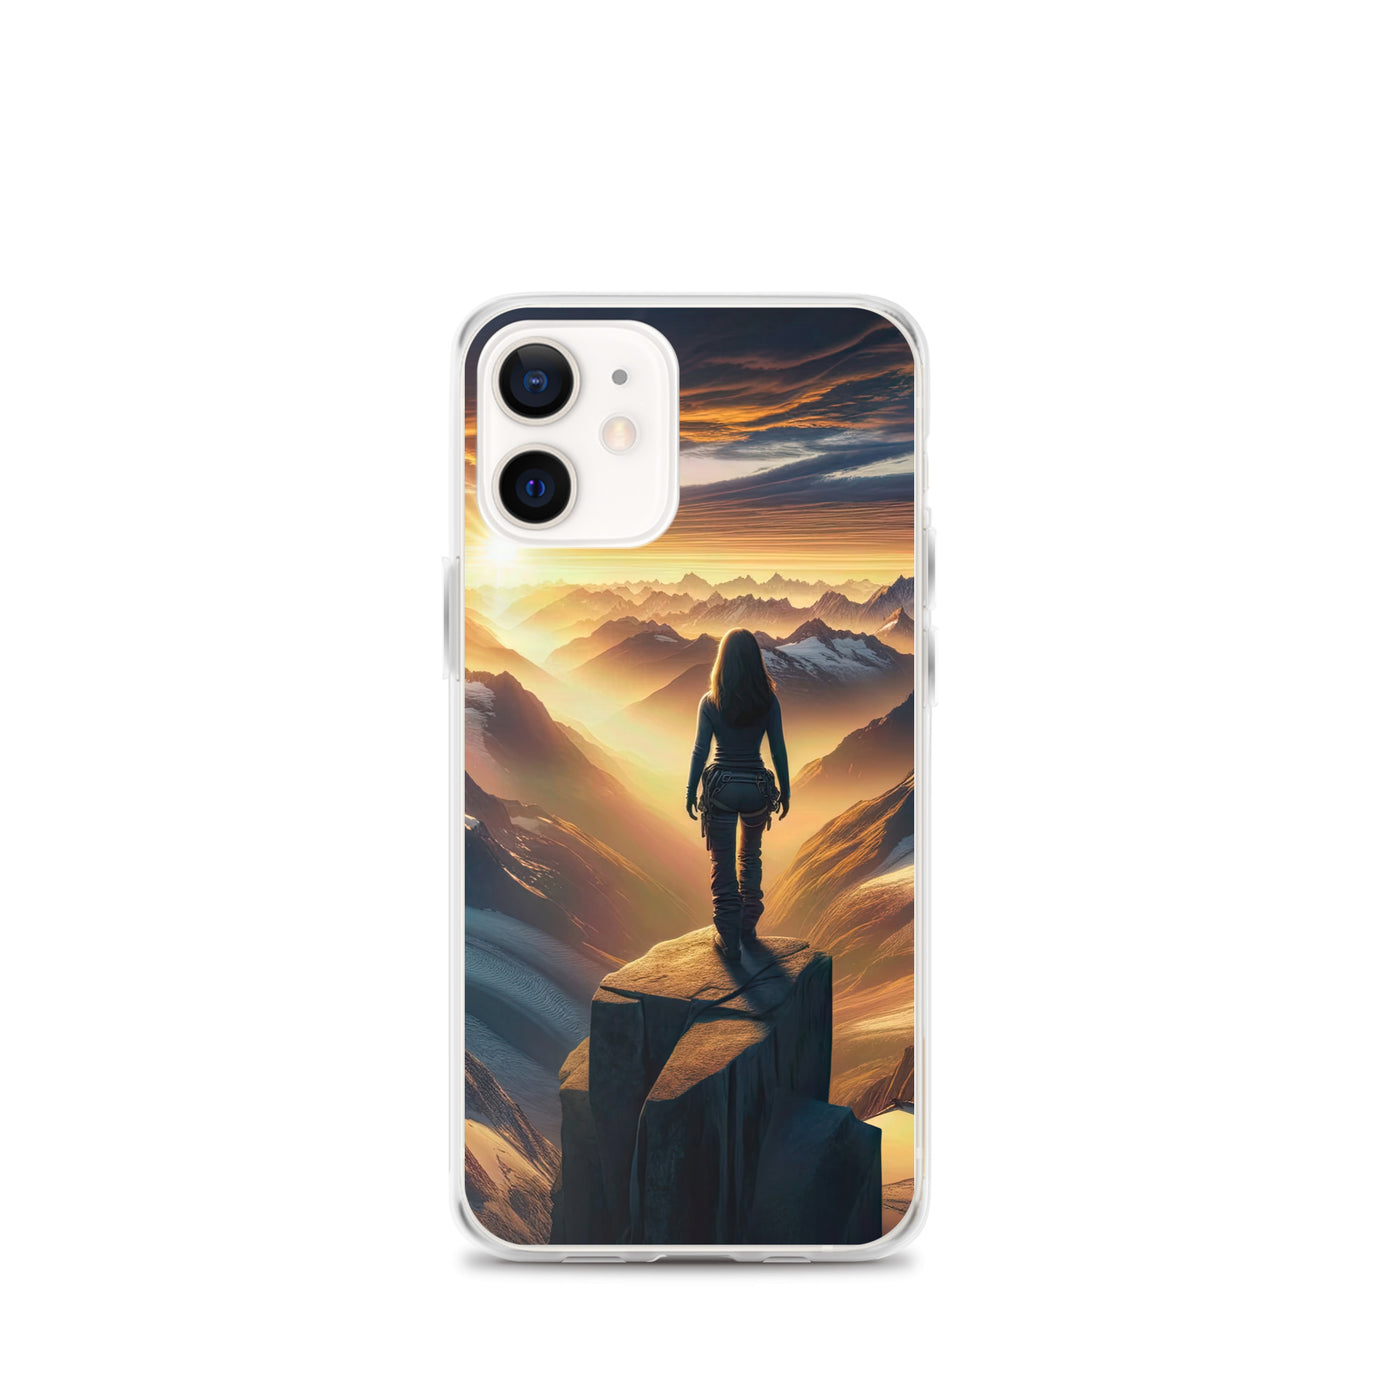 Fotorealistische Darstellung der Alpen bei Sonnenaufgang, Wanderin unter einem gold-purpurnen Himmel - iPhone Schutzhülle (durchsichtig) wandern xxx yyy zzz iPhone 12 mini